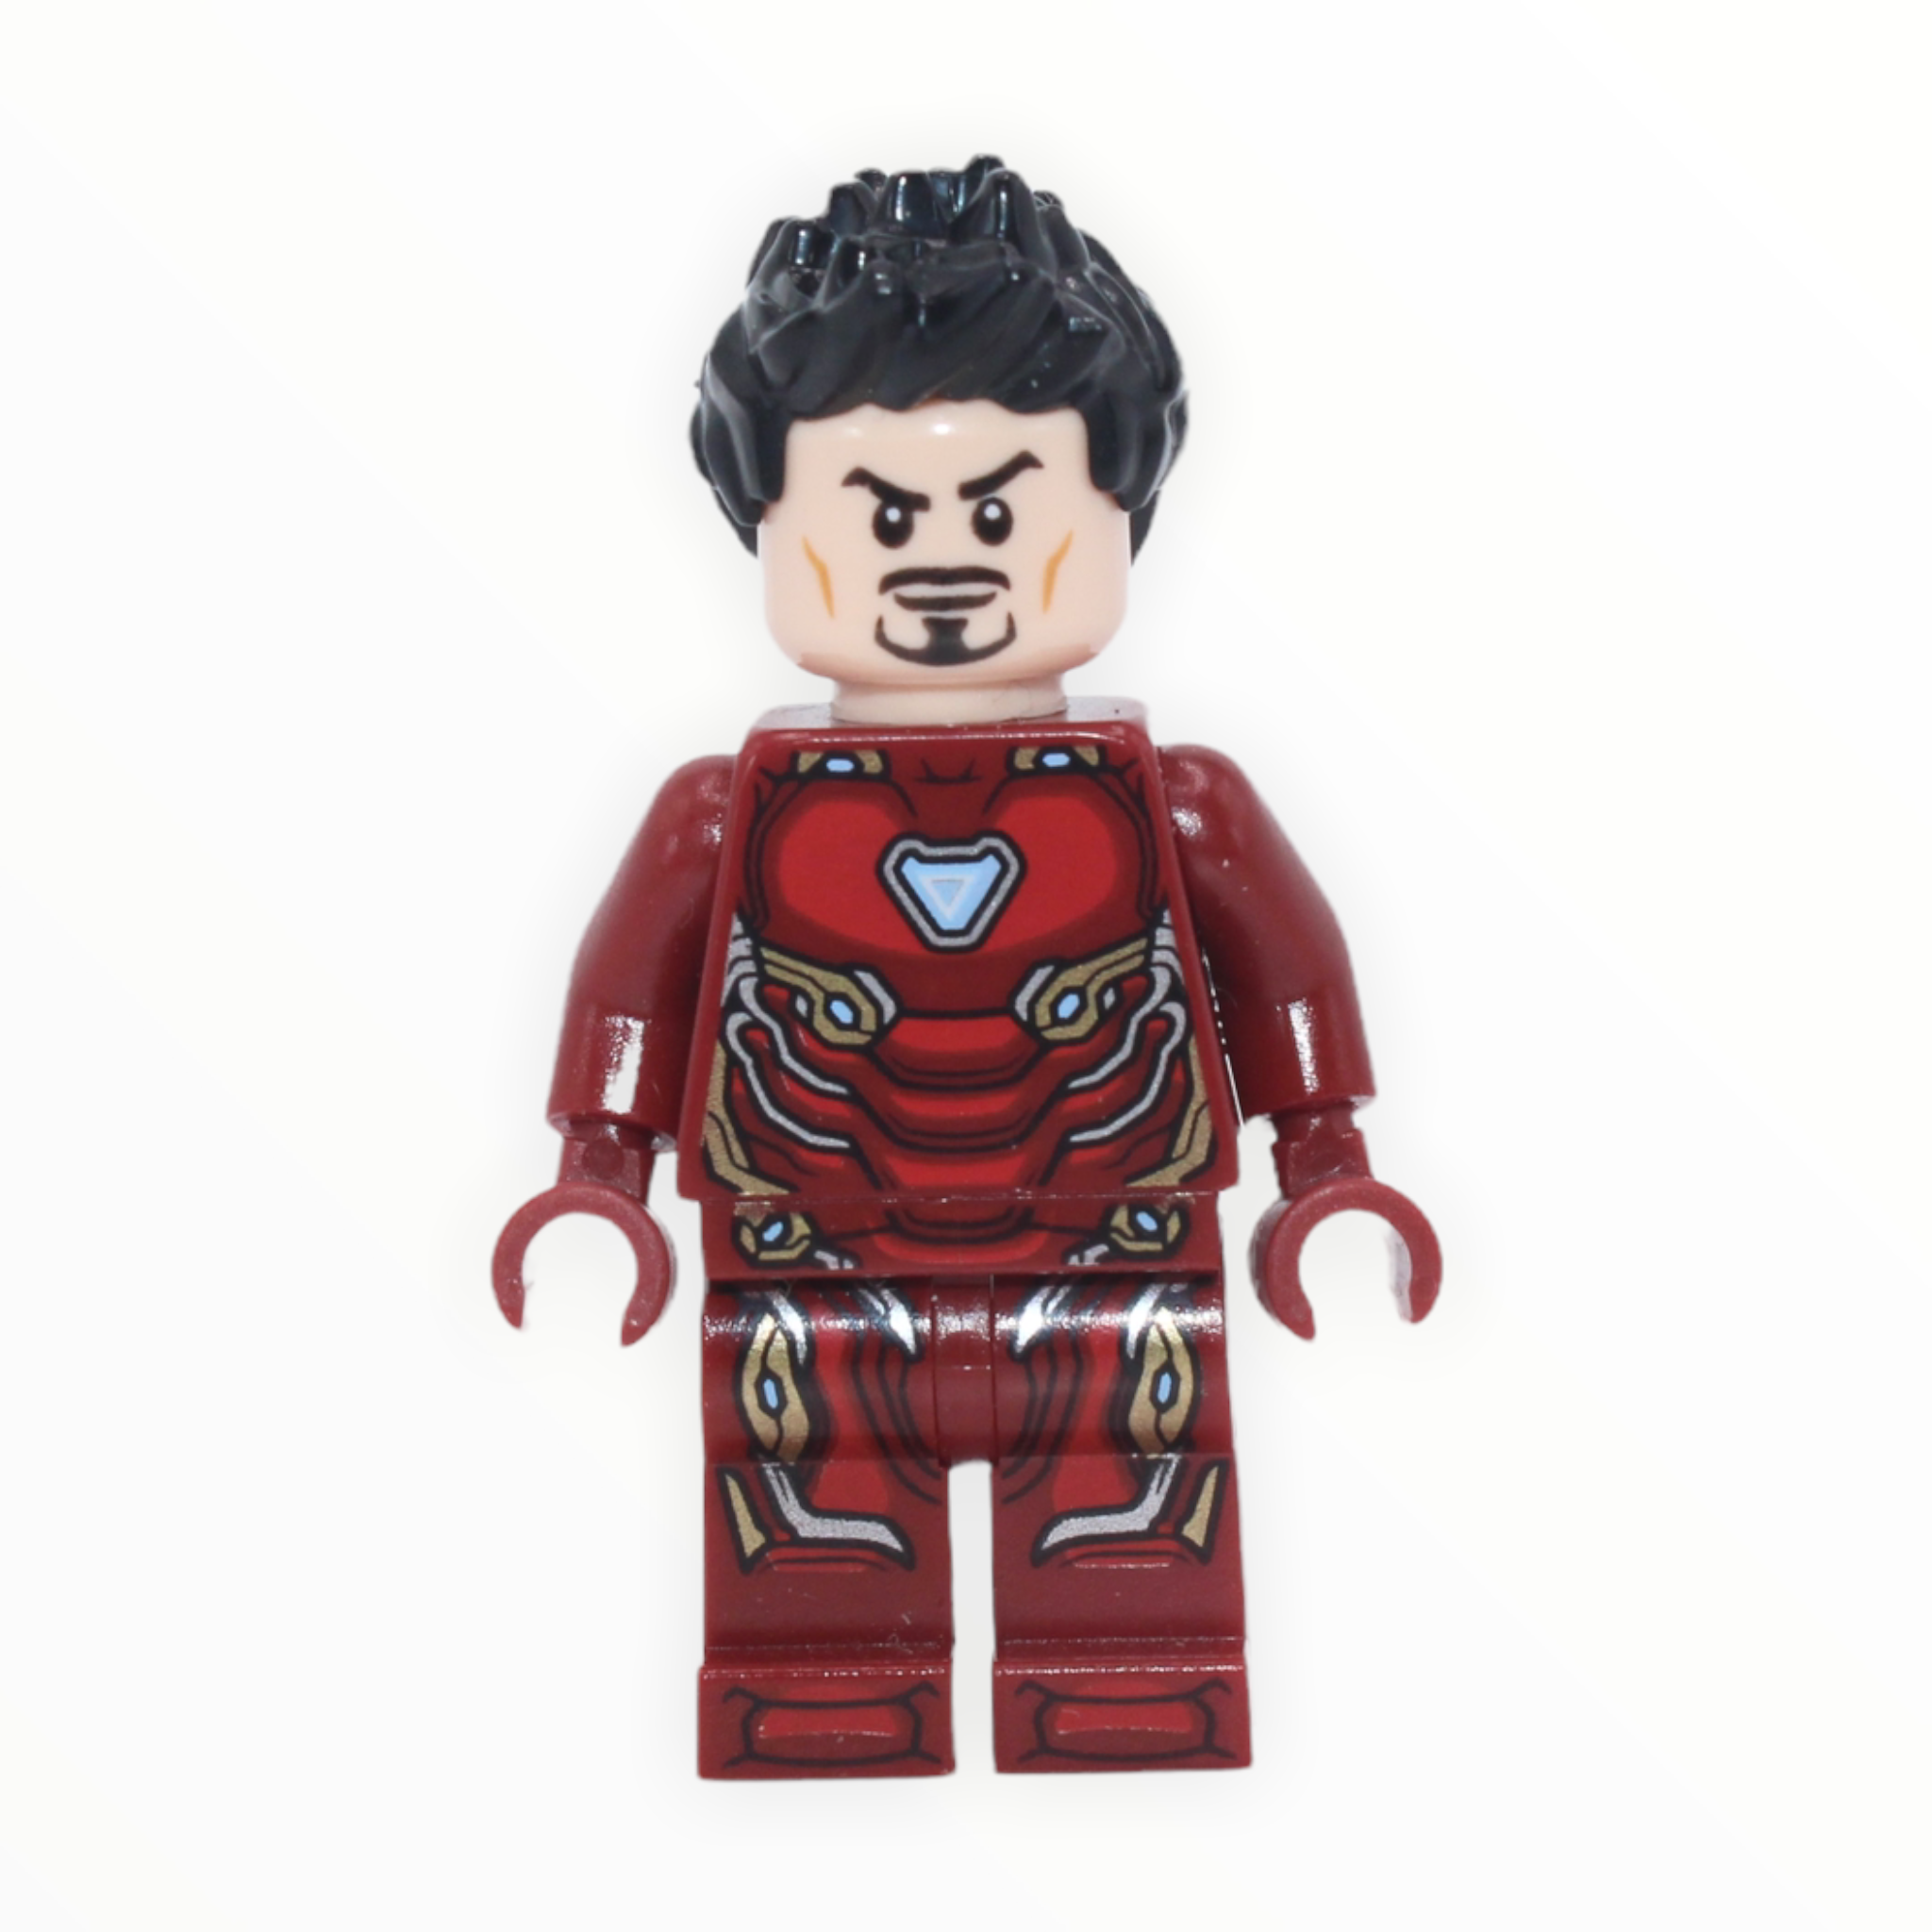 Tony Stark (Mark 50, no helmet)